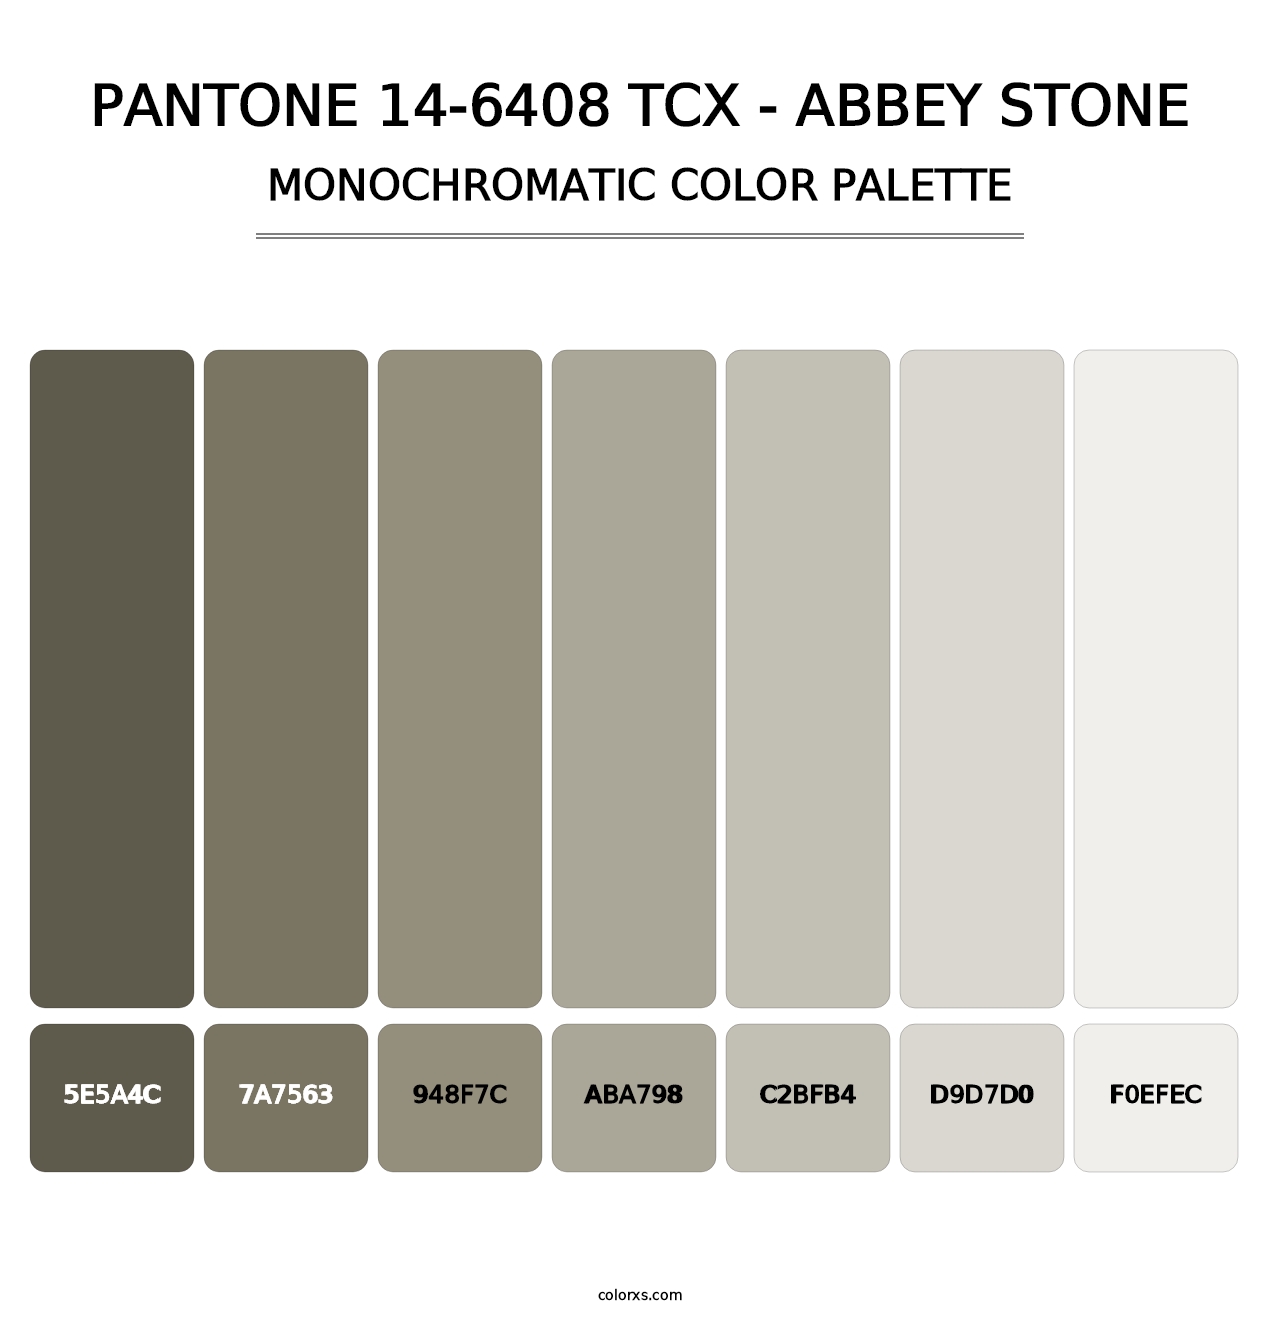 PANTONE 14-6408 TCX - Abbey Stone - Monochromatic Color Palette